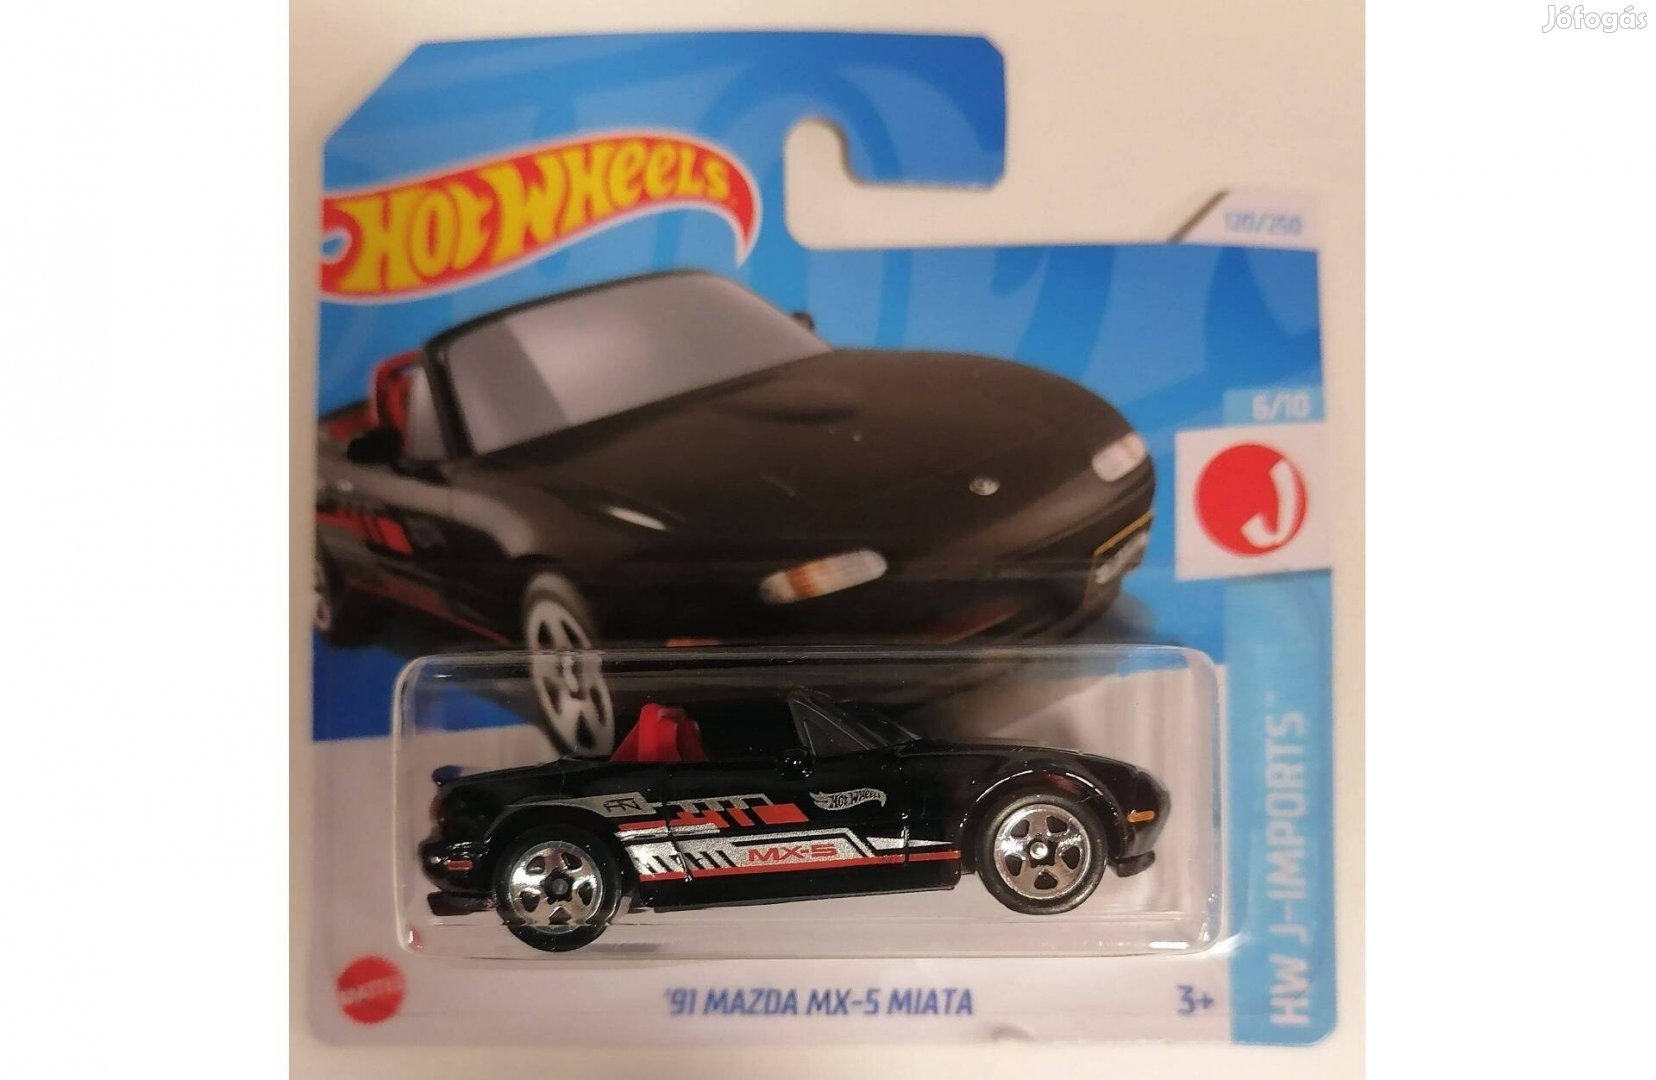 Hot Wheels '91 Mazda MX-5 Miata black